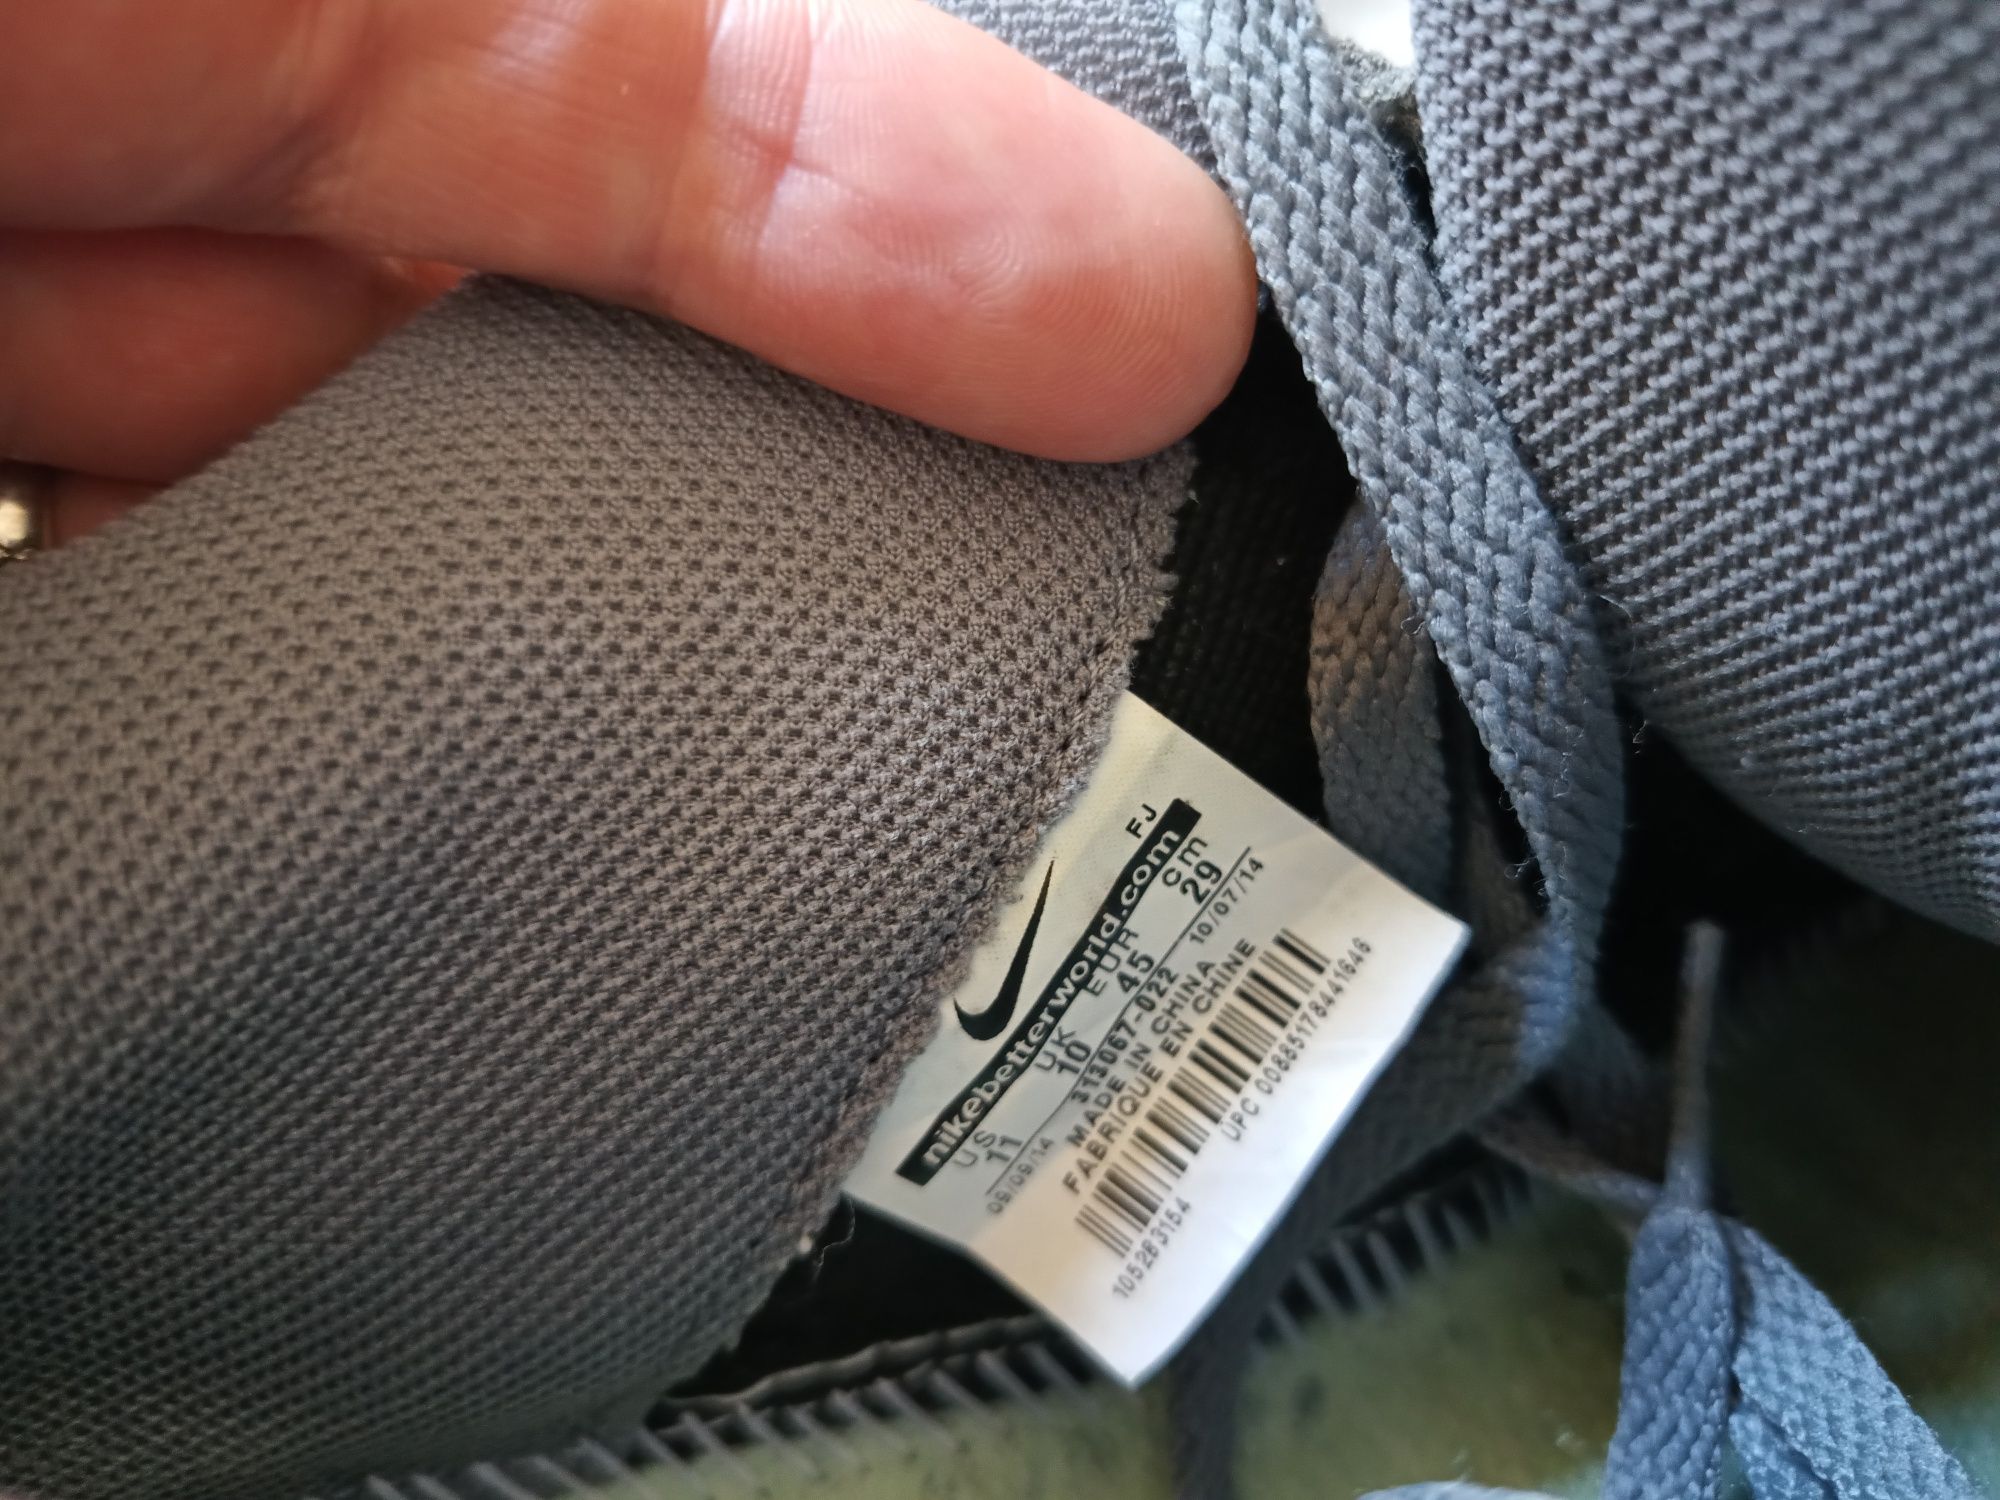 Buty Nike w bardzo dobrym stanie.